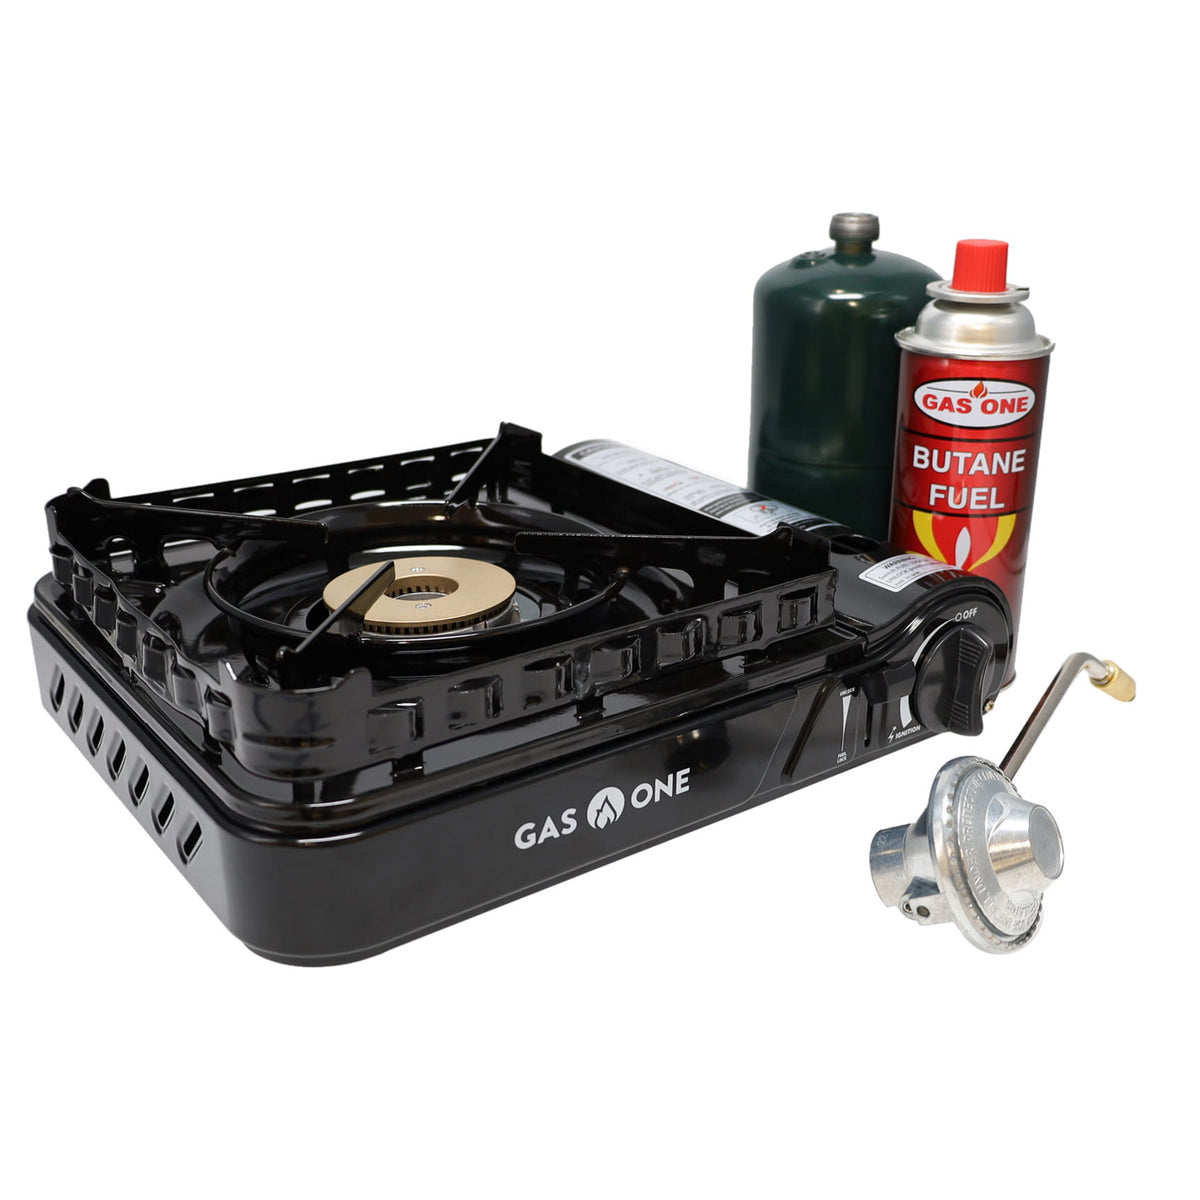 1-Burner Portable Butane and Propane Gas Stove – Gas One